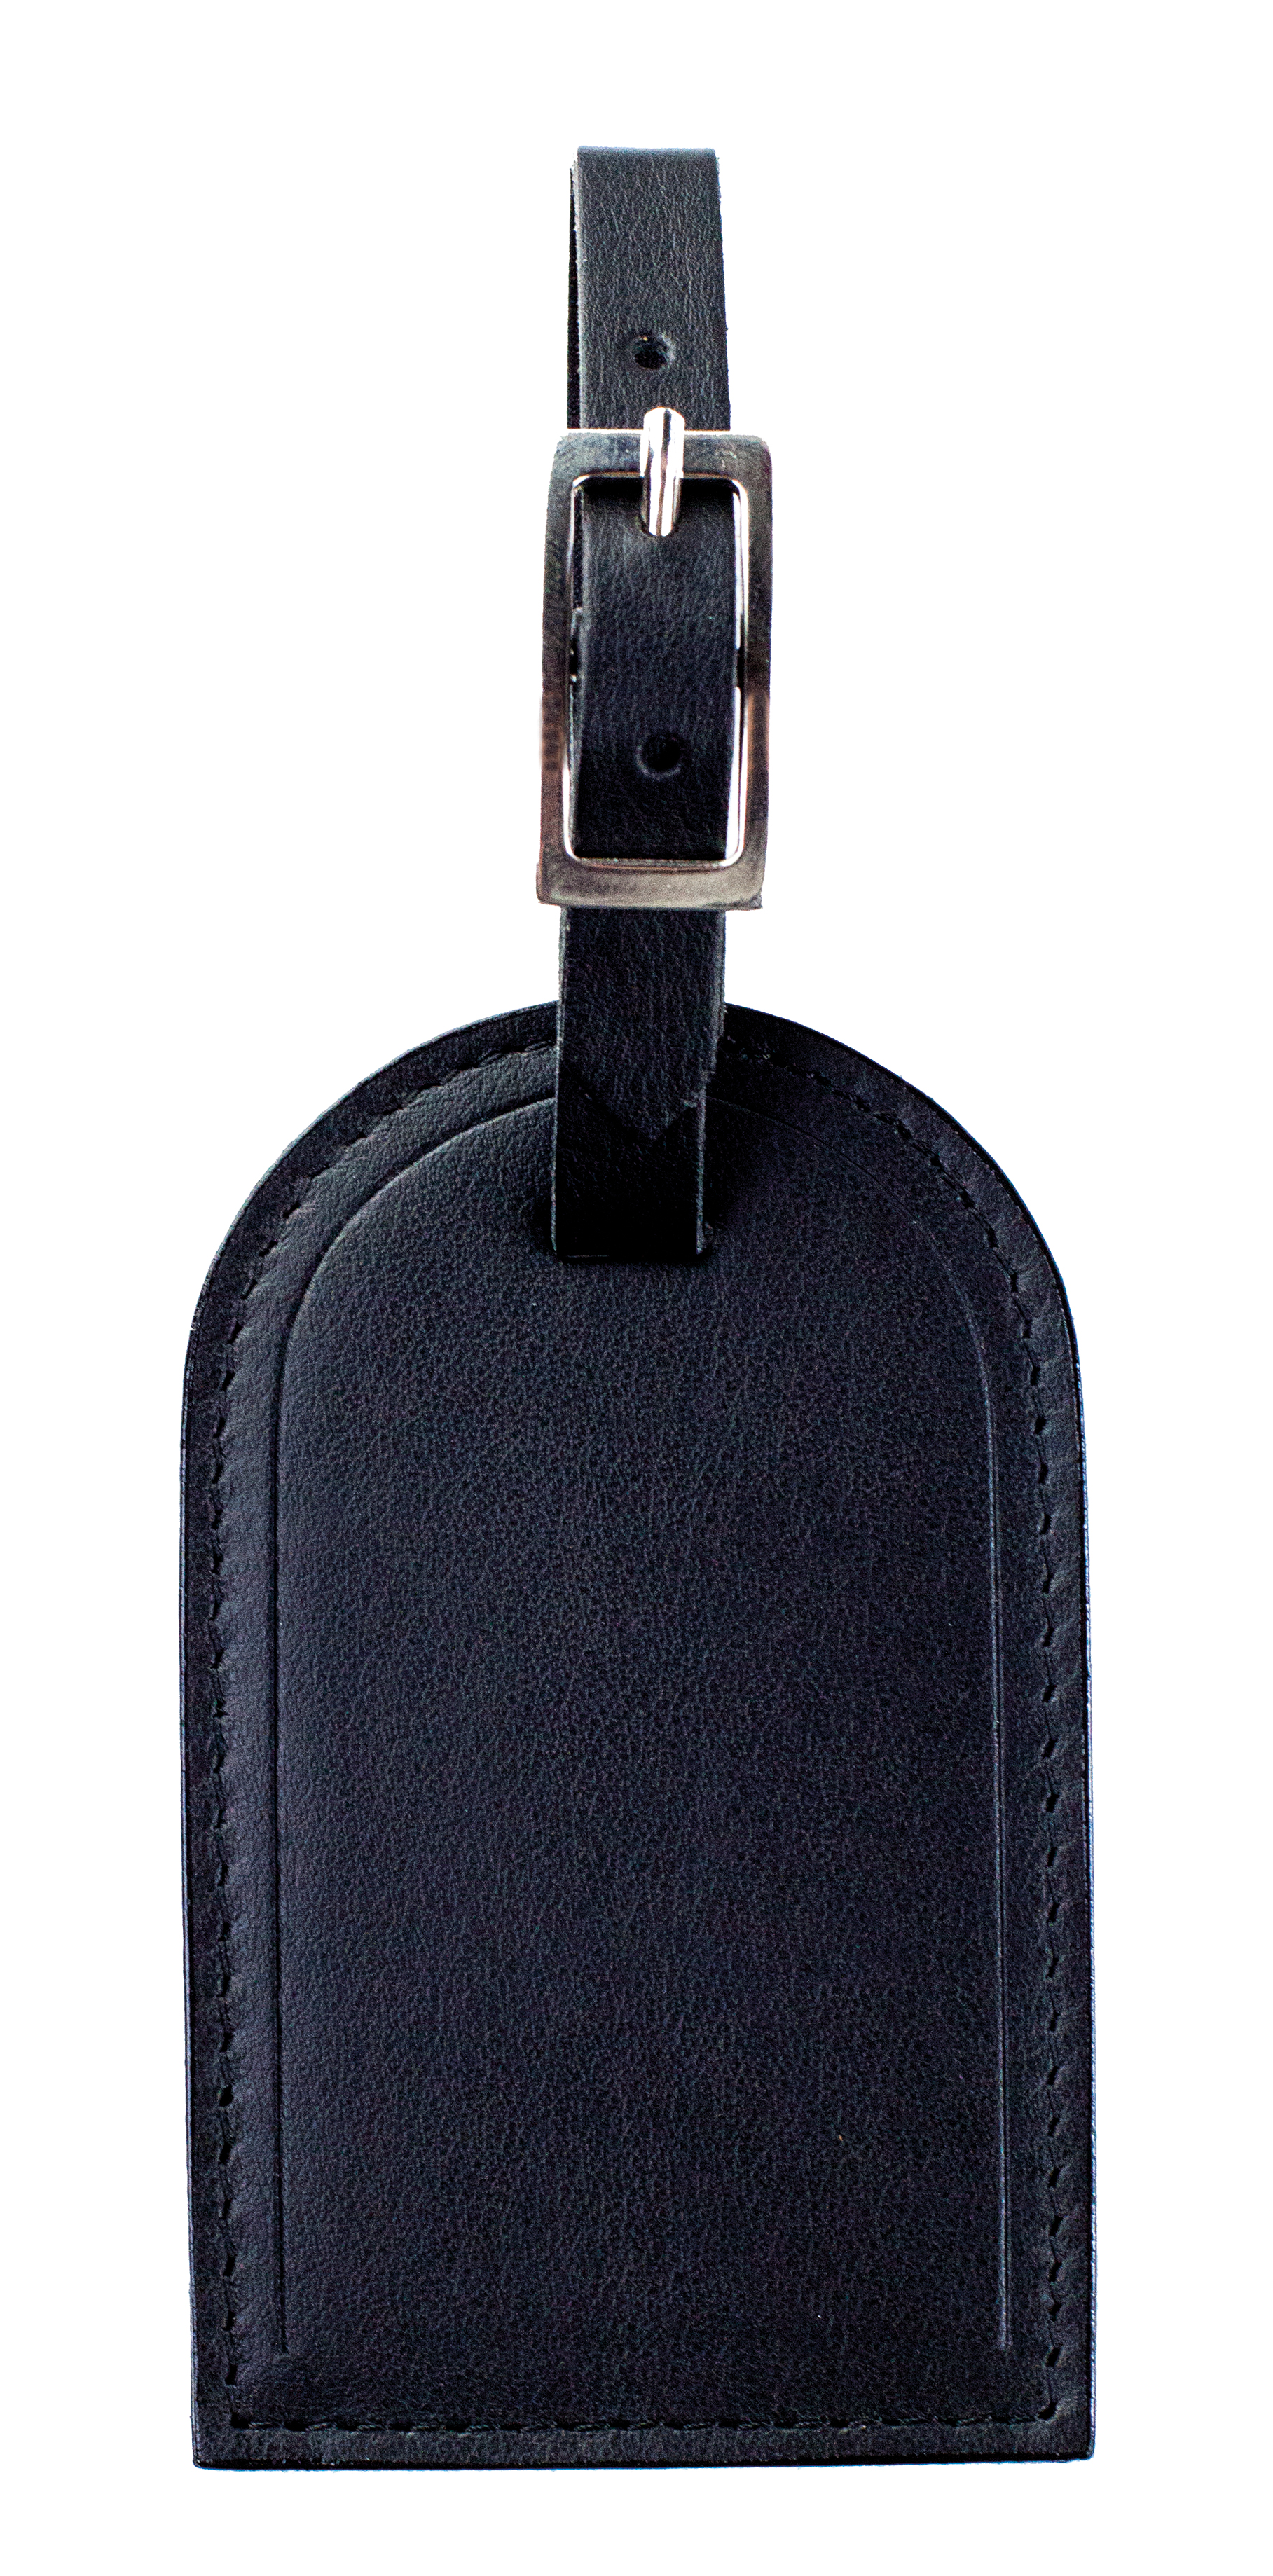 Kofferanhänger aus Leder/43118 ca Amazon Accessoires Taschen Reisetaschen 11,5 x 7 cm Echt Leder 20 g 